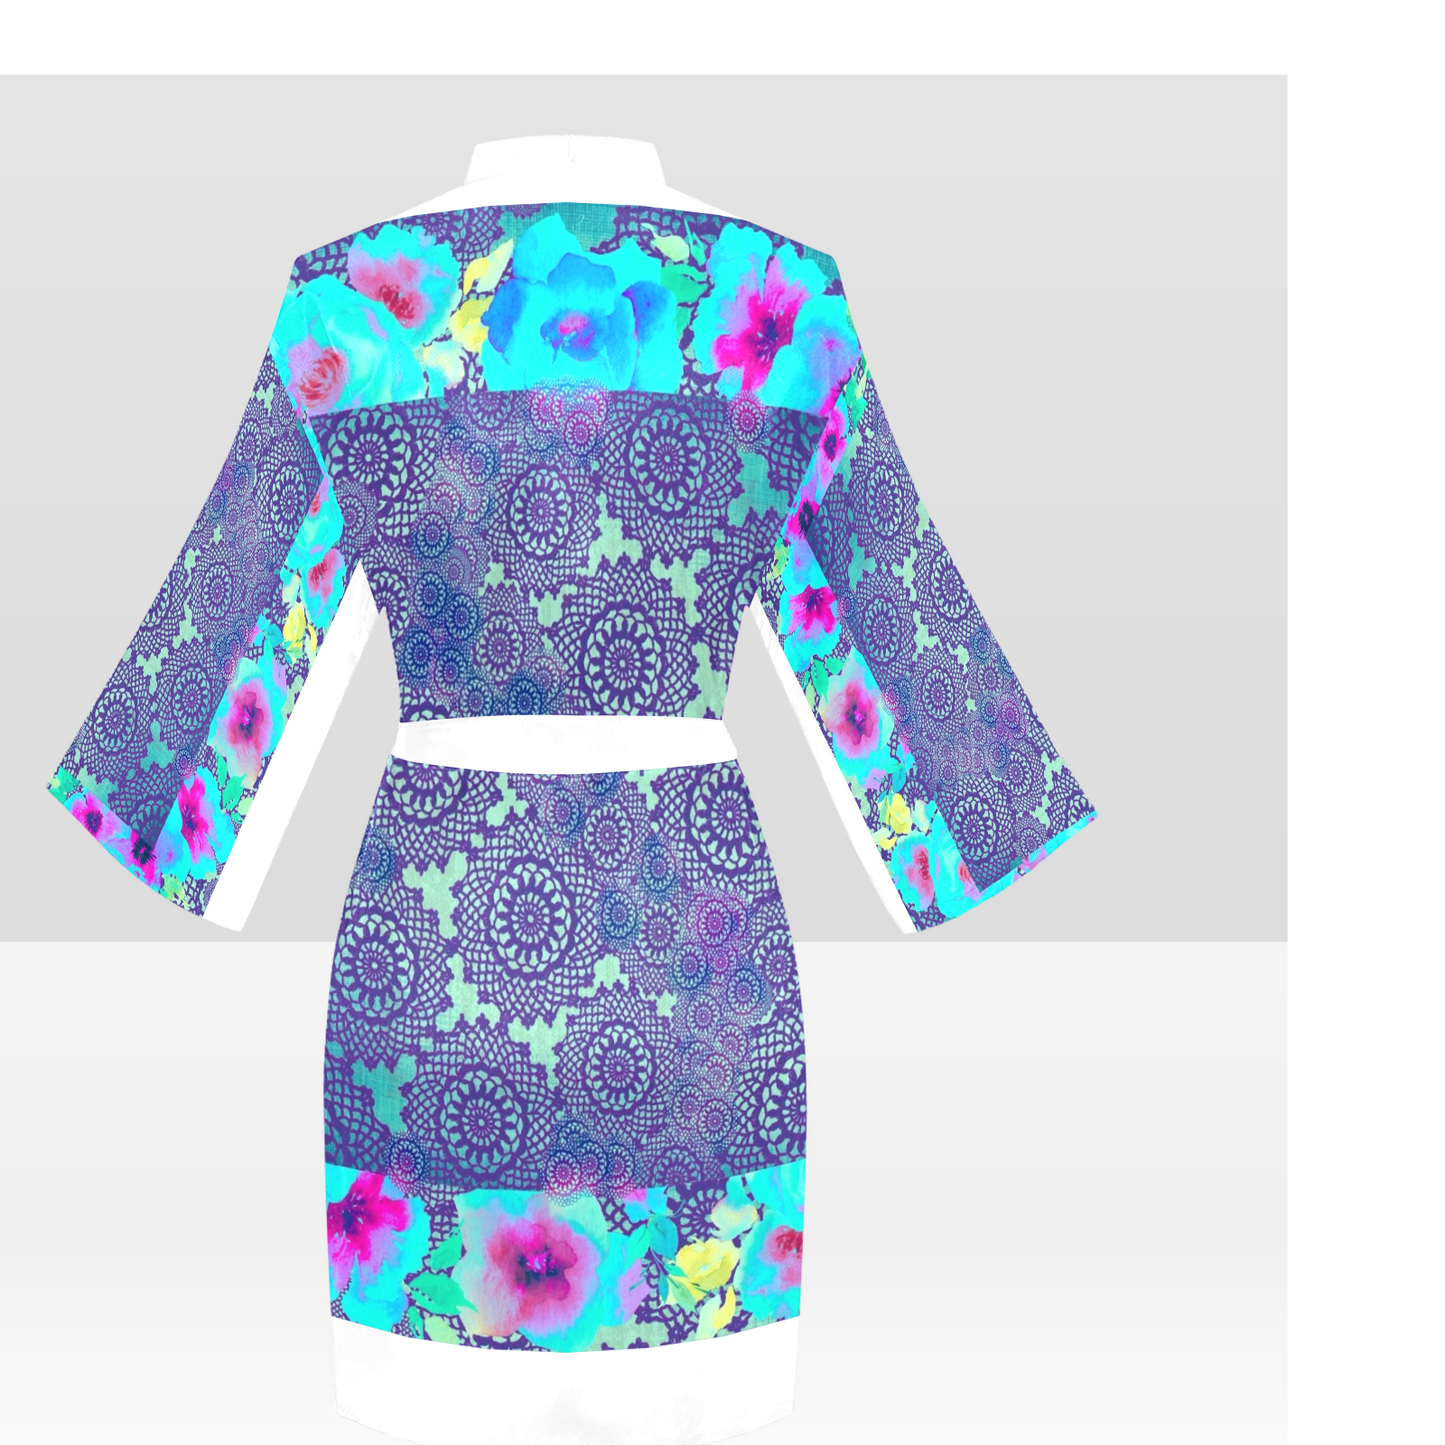 Victorian Lace Kimono Robe, Black or White Trim, Sizes XS to 2XL, Design 14